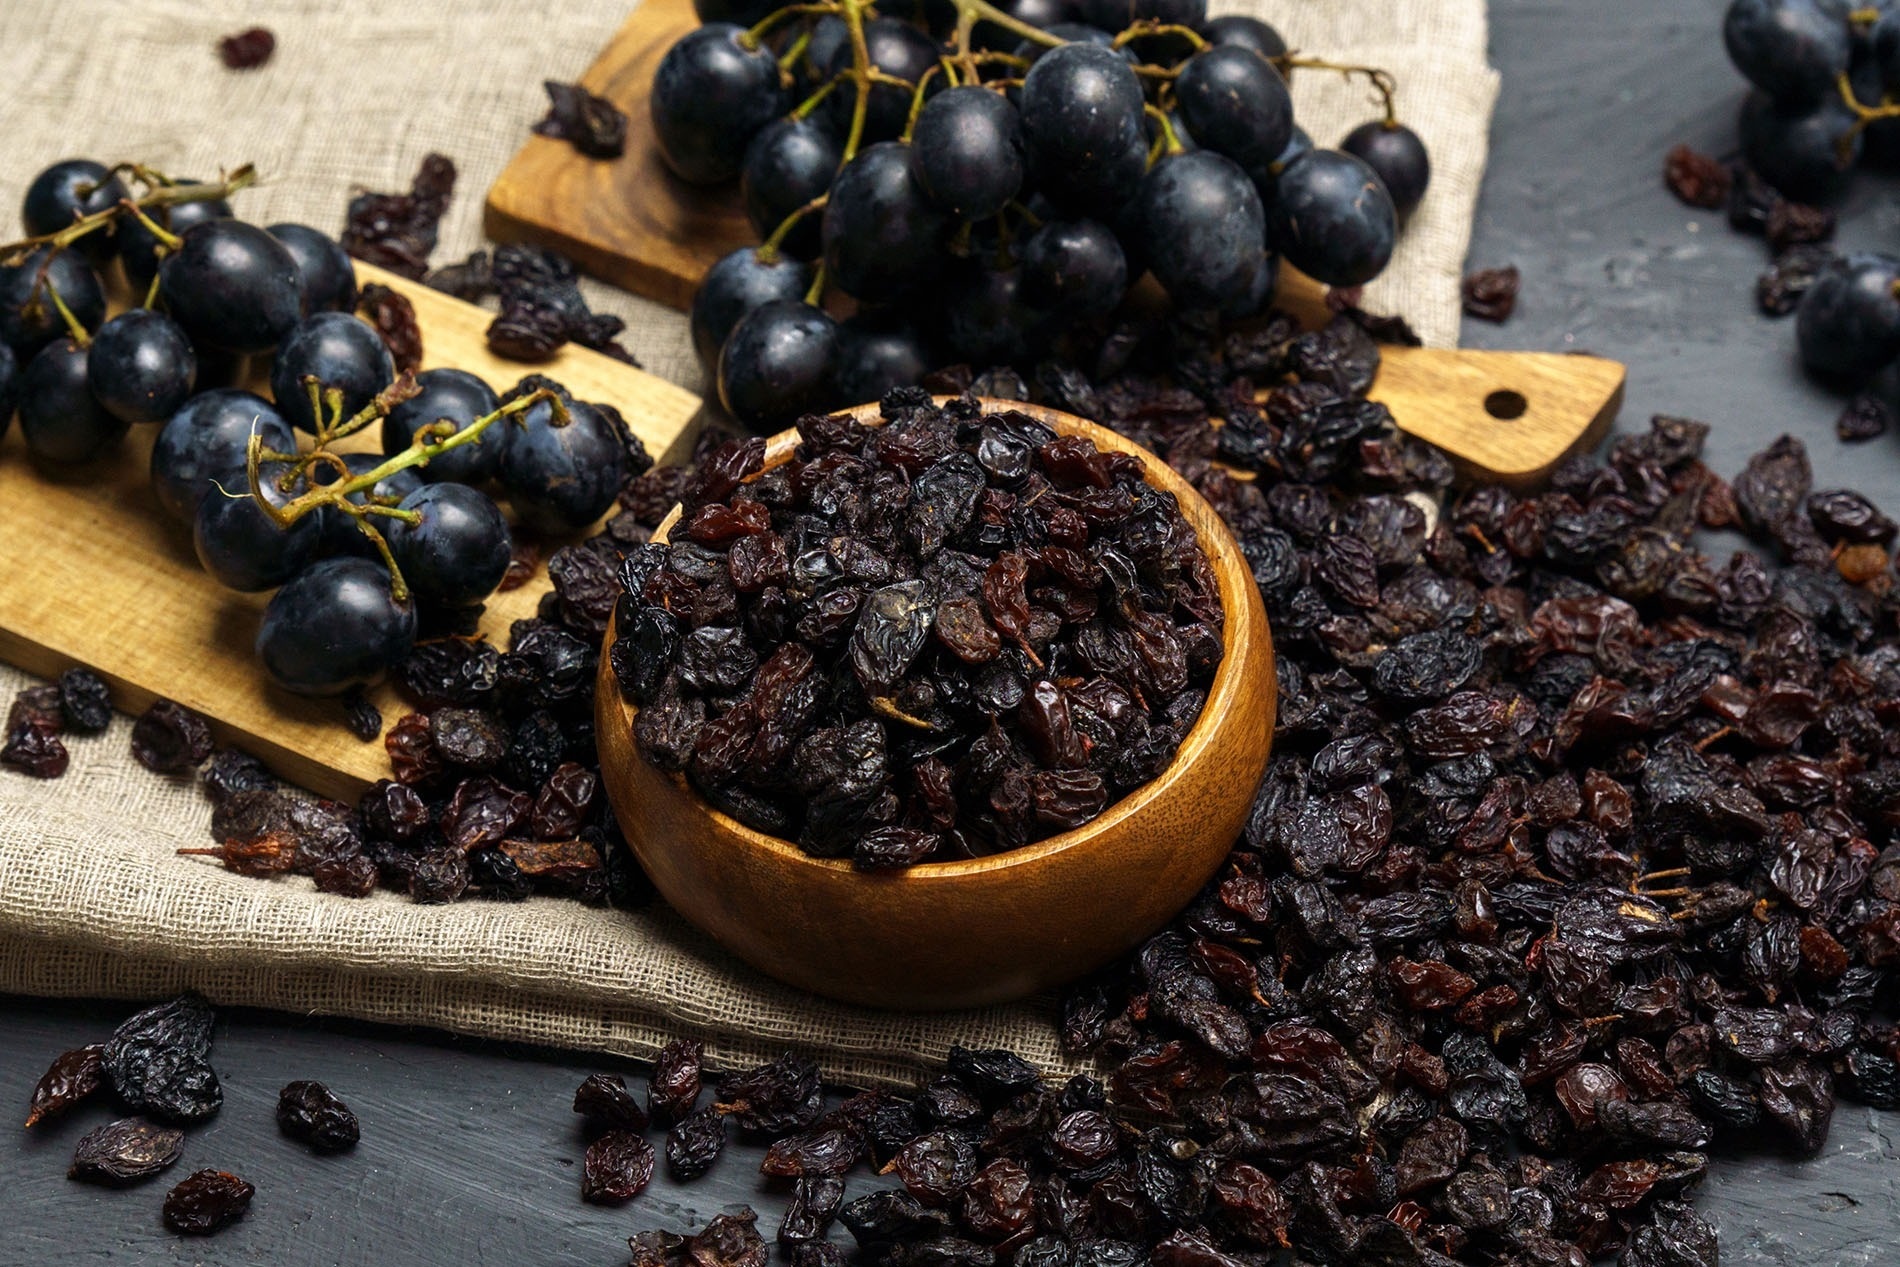 Malaga raisins